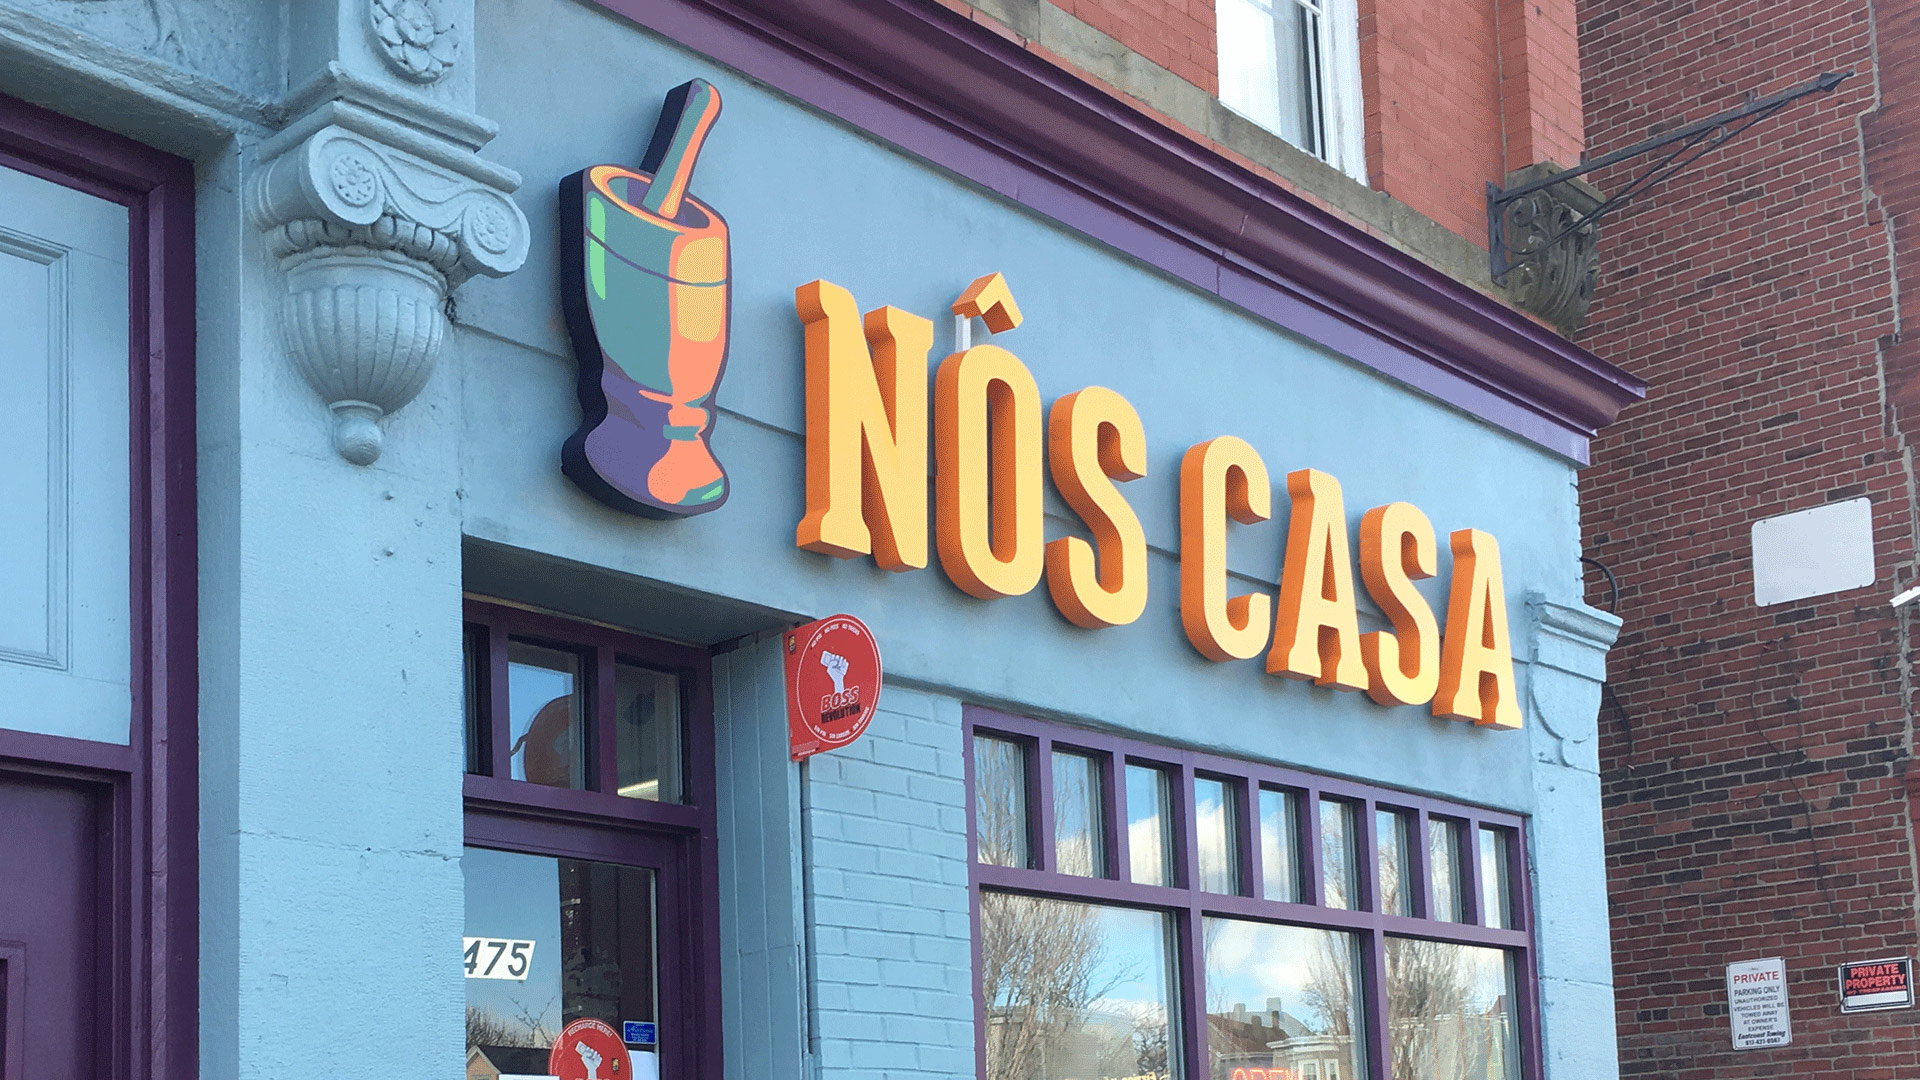 Blue facade with orange and yellow "Nos Casa" sign